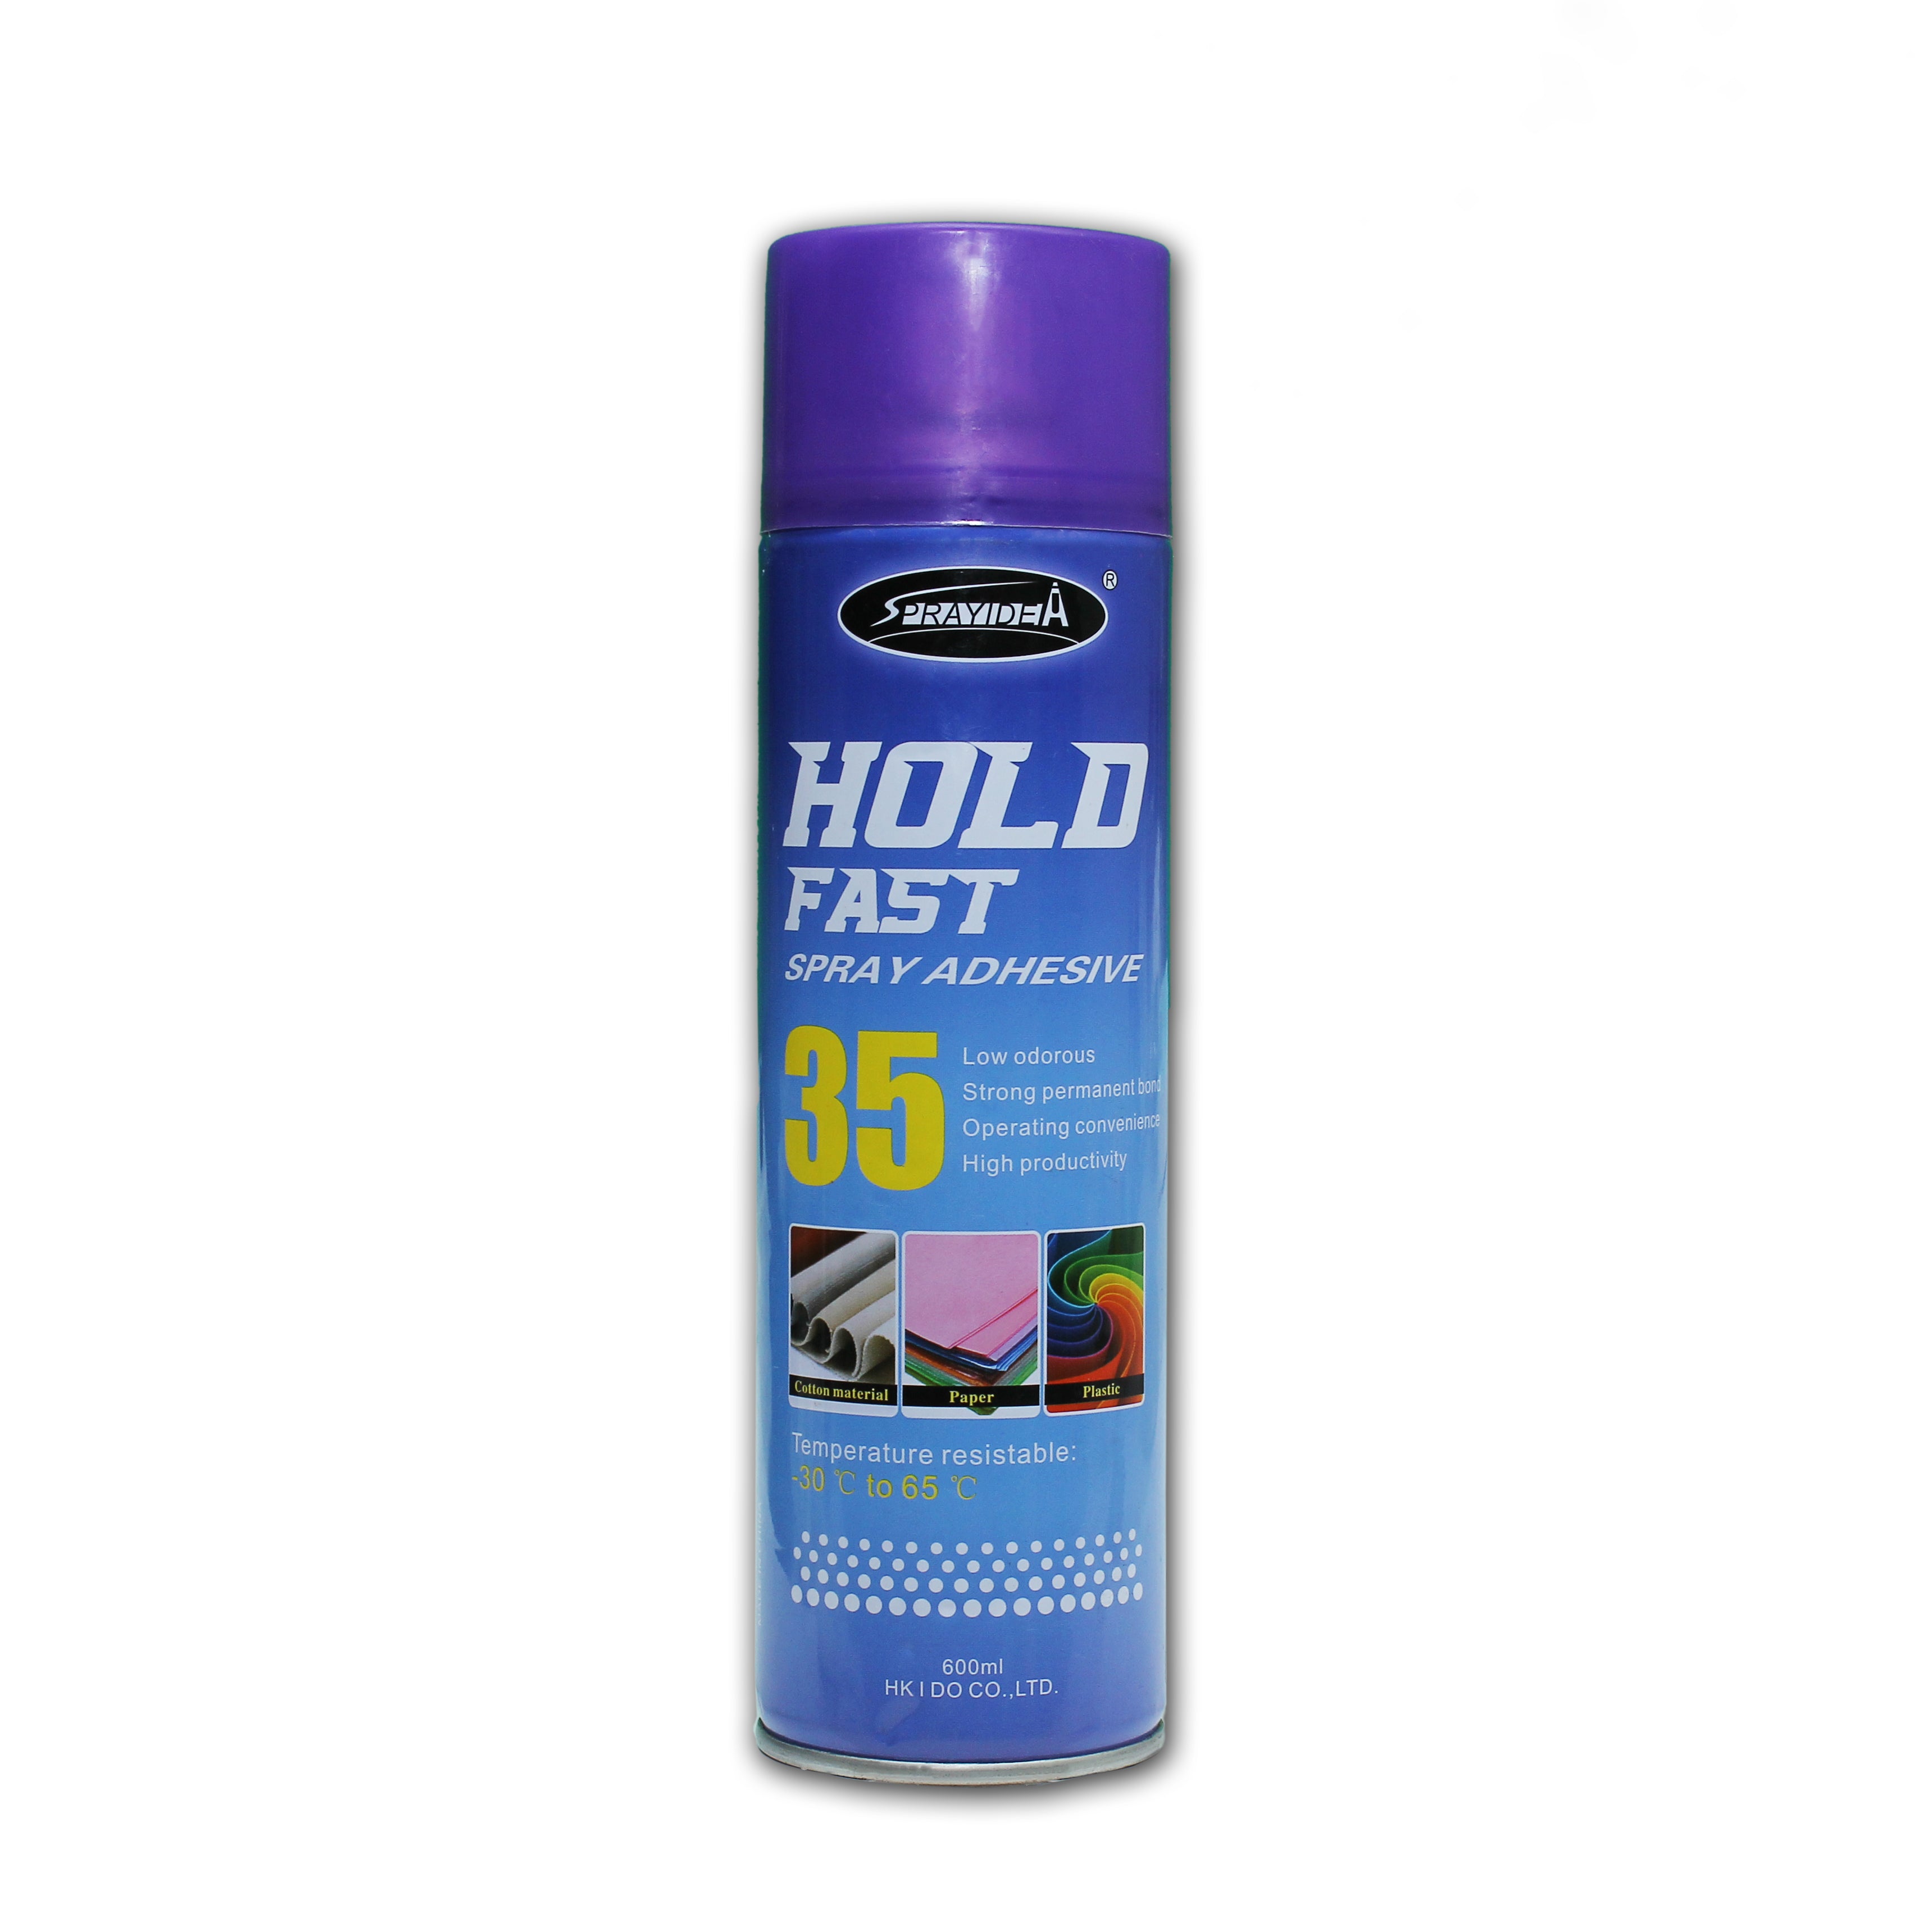 Adhesives - Multi Purpose Spray, 1Pc